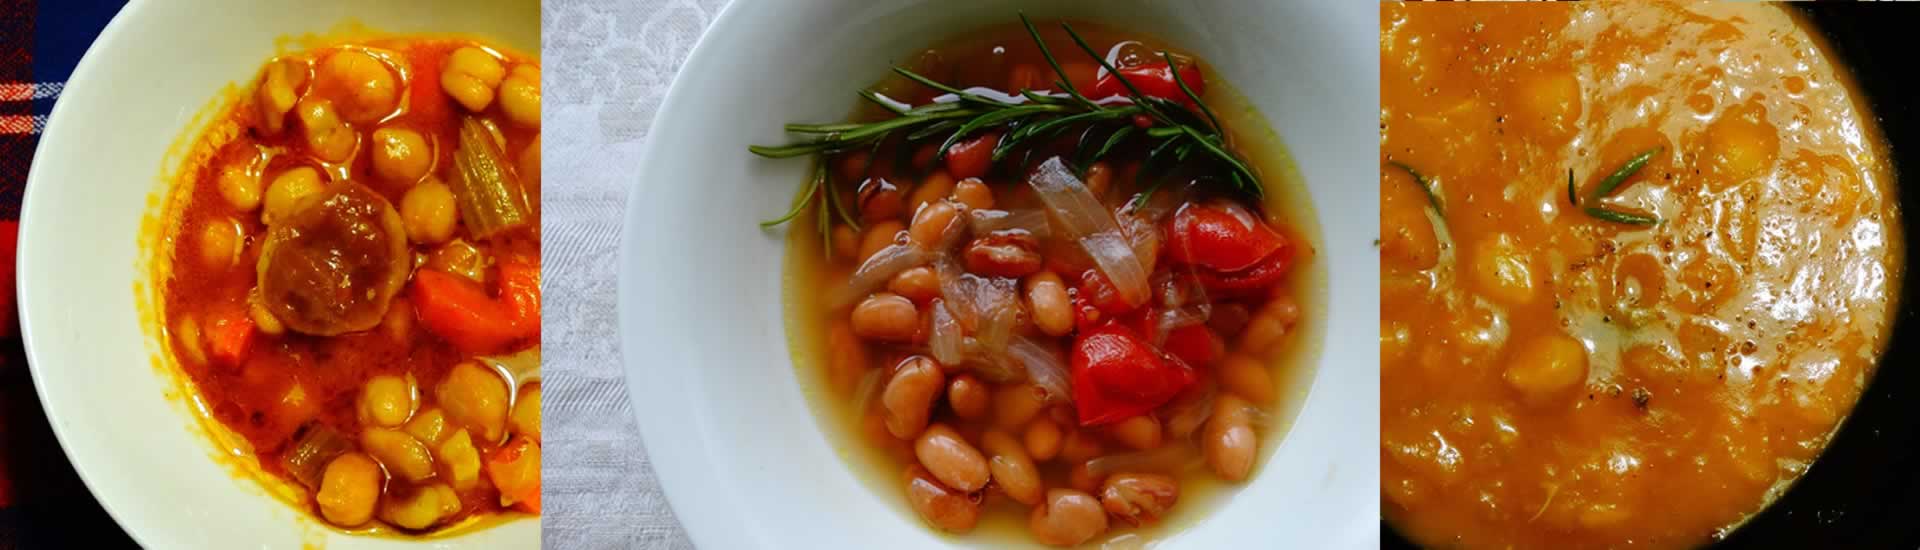 Ricette con zuppe e minestre invernali